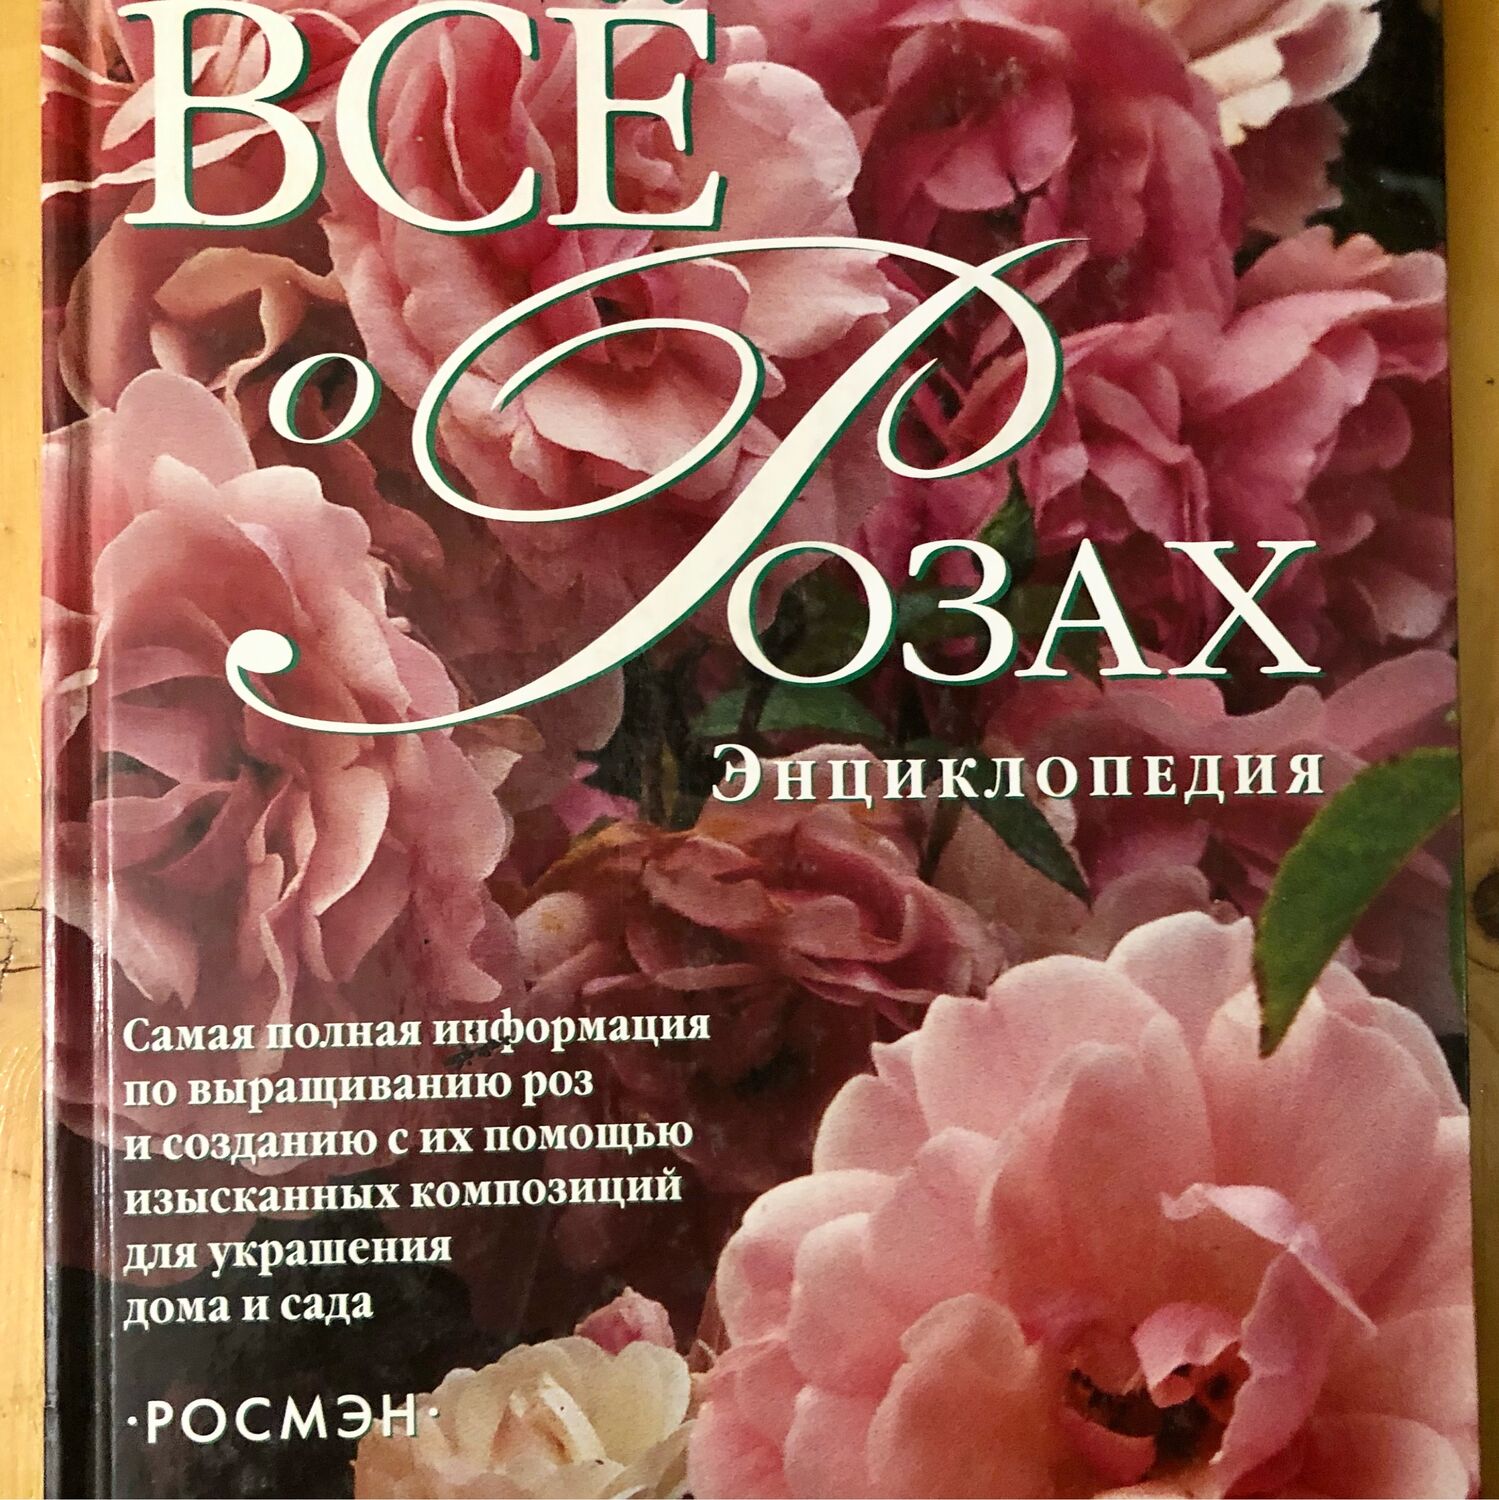 Книга про розы. Книги по выращиванию роз. Энциклопедия роз книга. Книга все о розах.